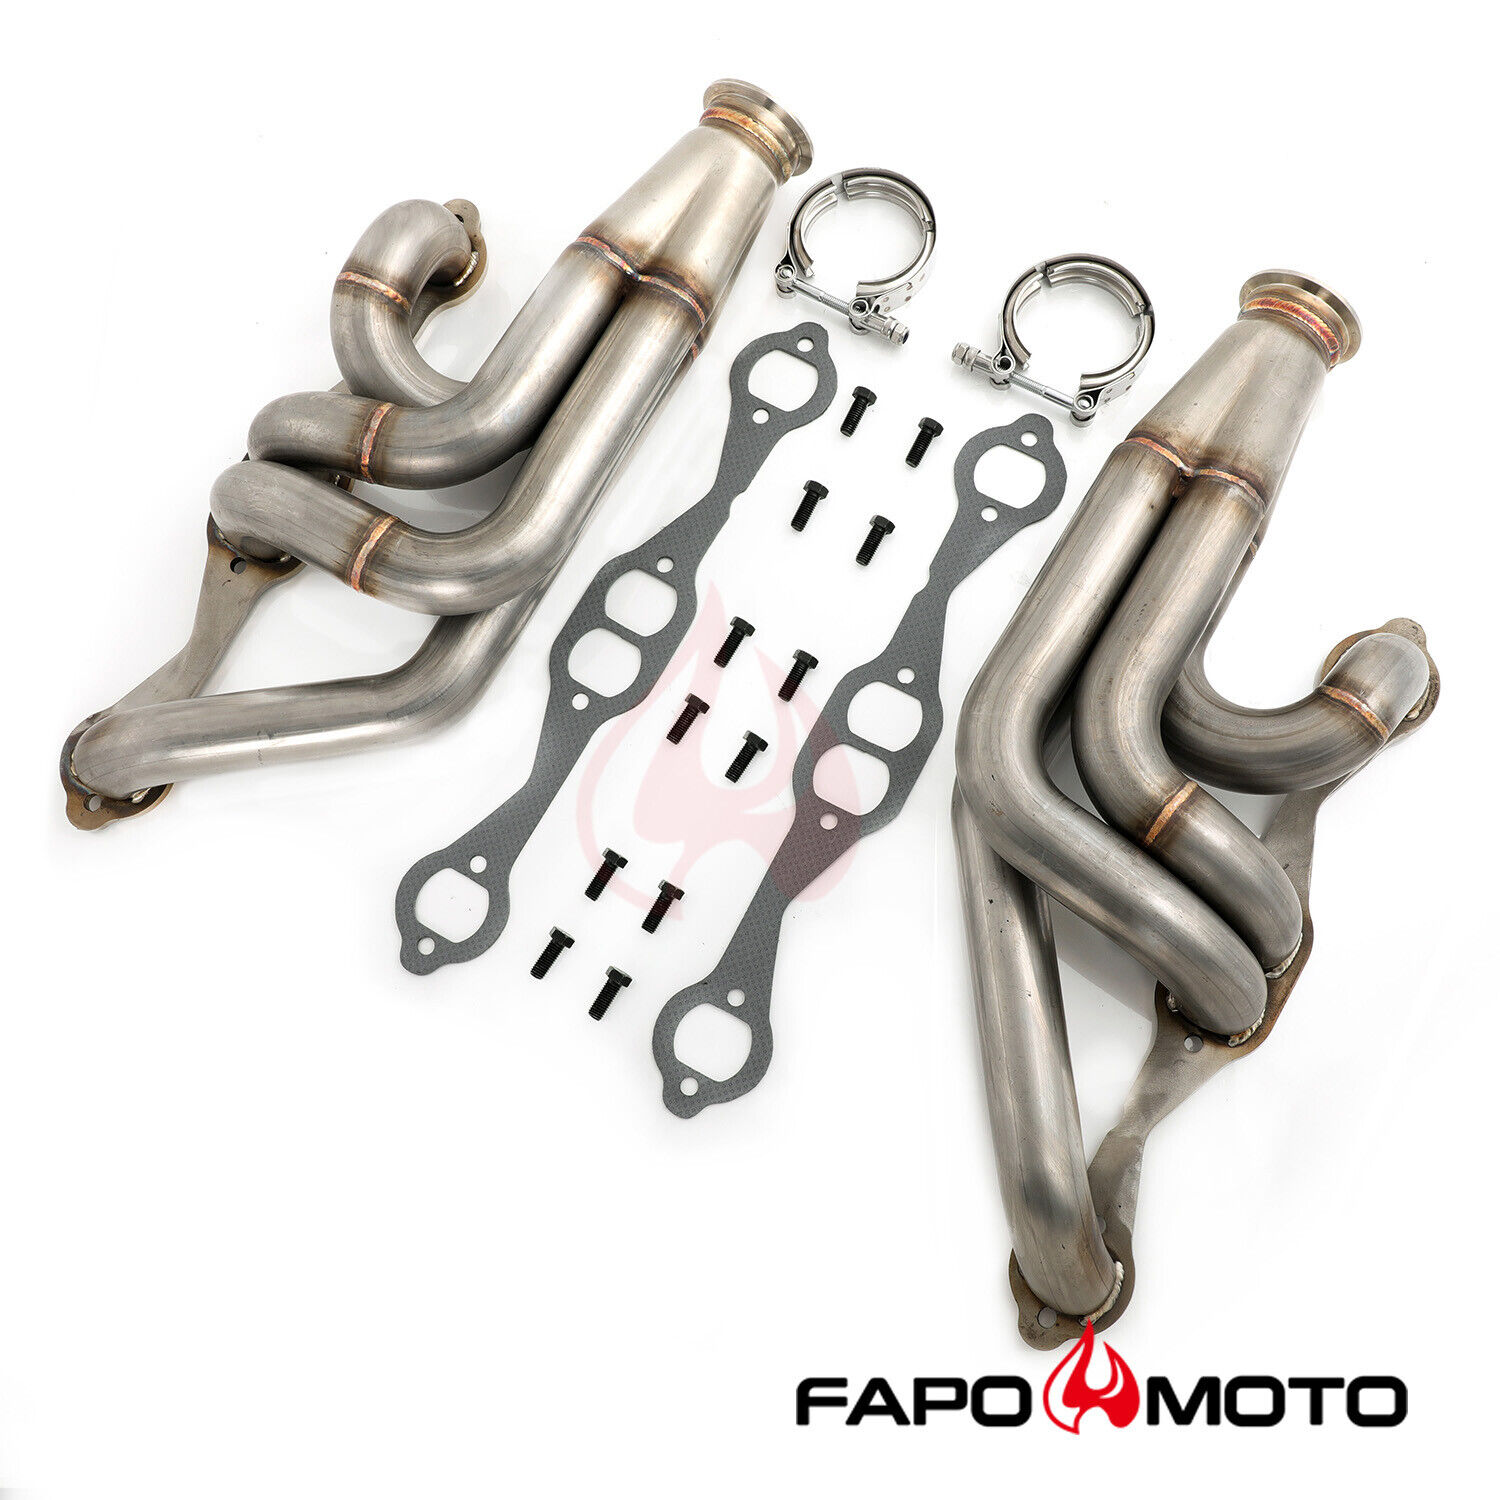 FAPO Turbo Headers for Chevy Chevelle Malibu El Camino A-body Small Block V8